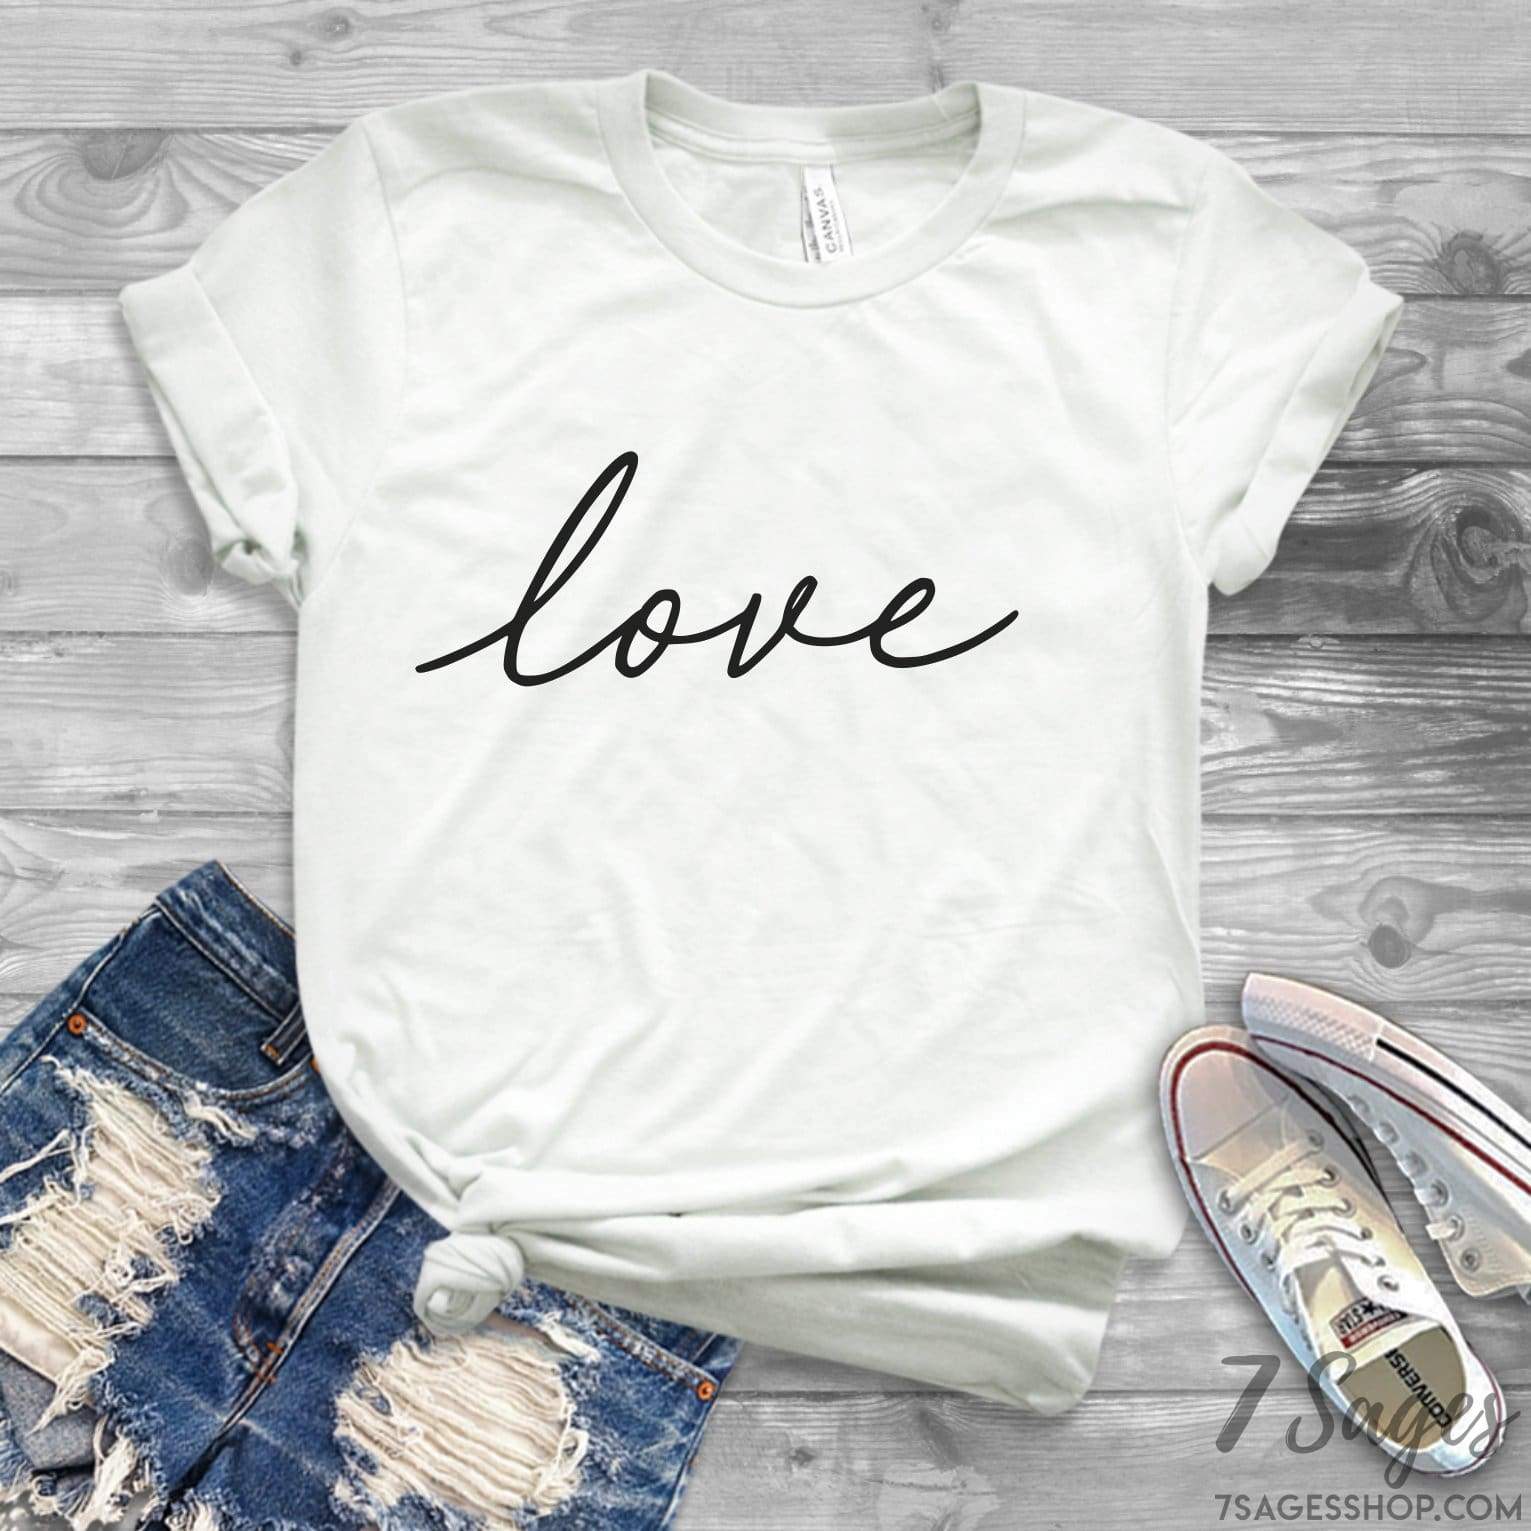 Valentine’s Day T-Shirt - Valentine’s Day Gift - Love Shirt - Love T-Shirt - Cursive Love Shirt - Valentines Day